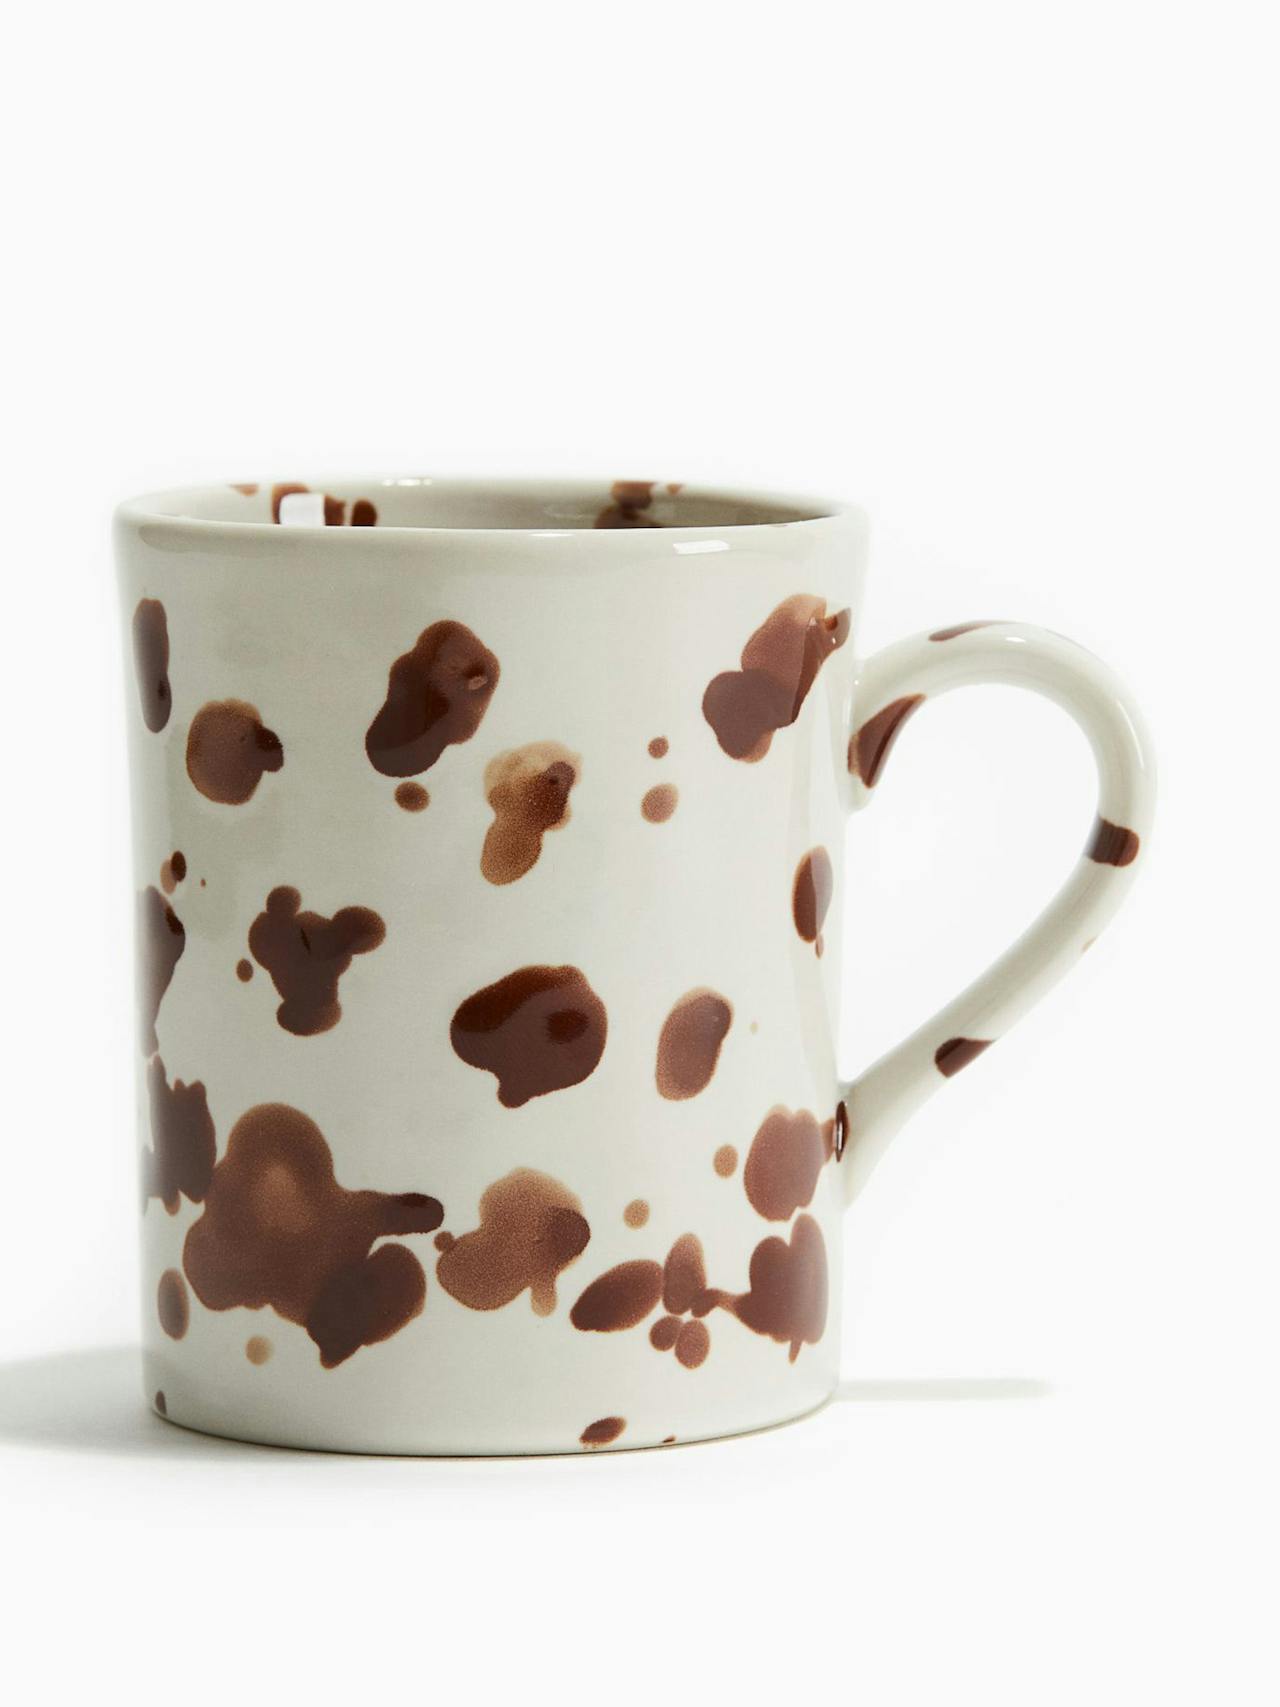 Speckled-glaze stoneware mug